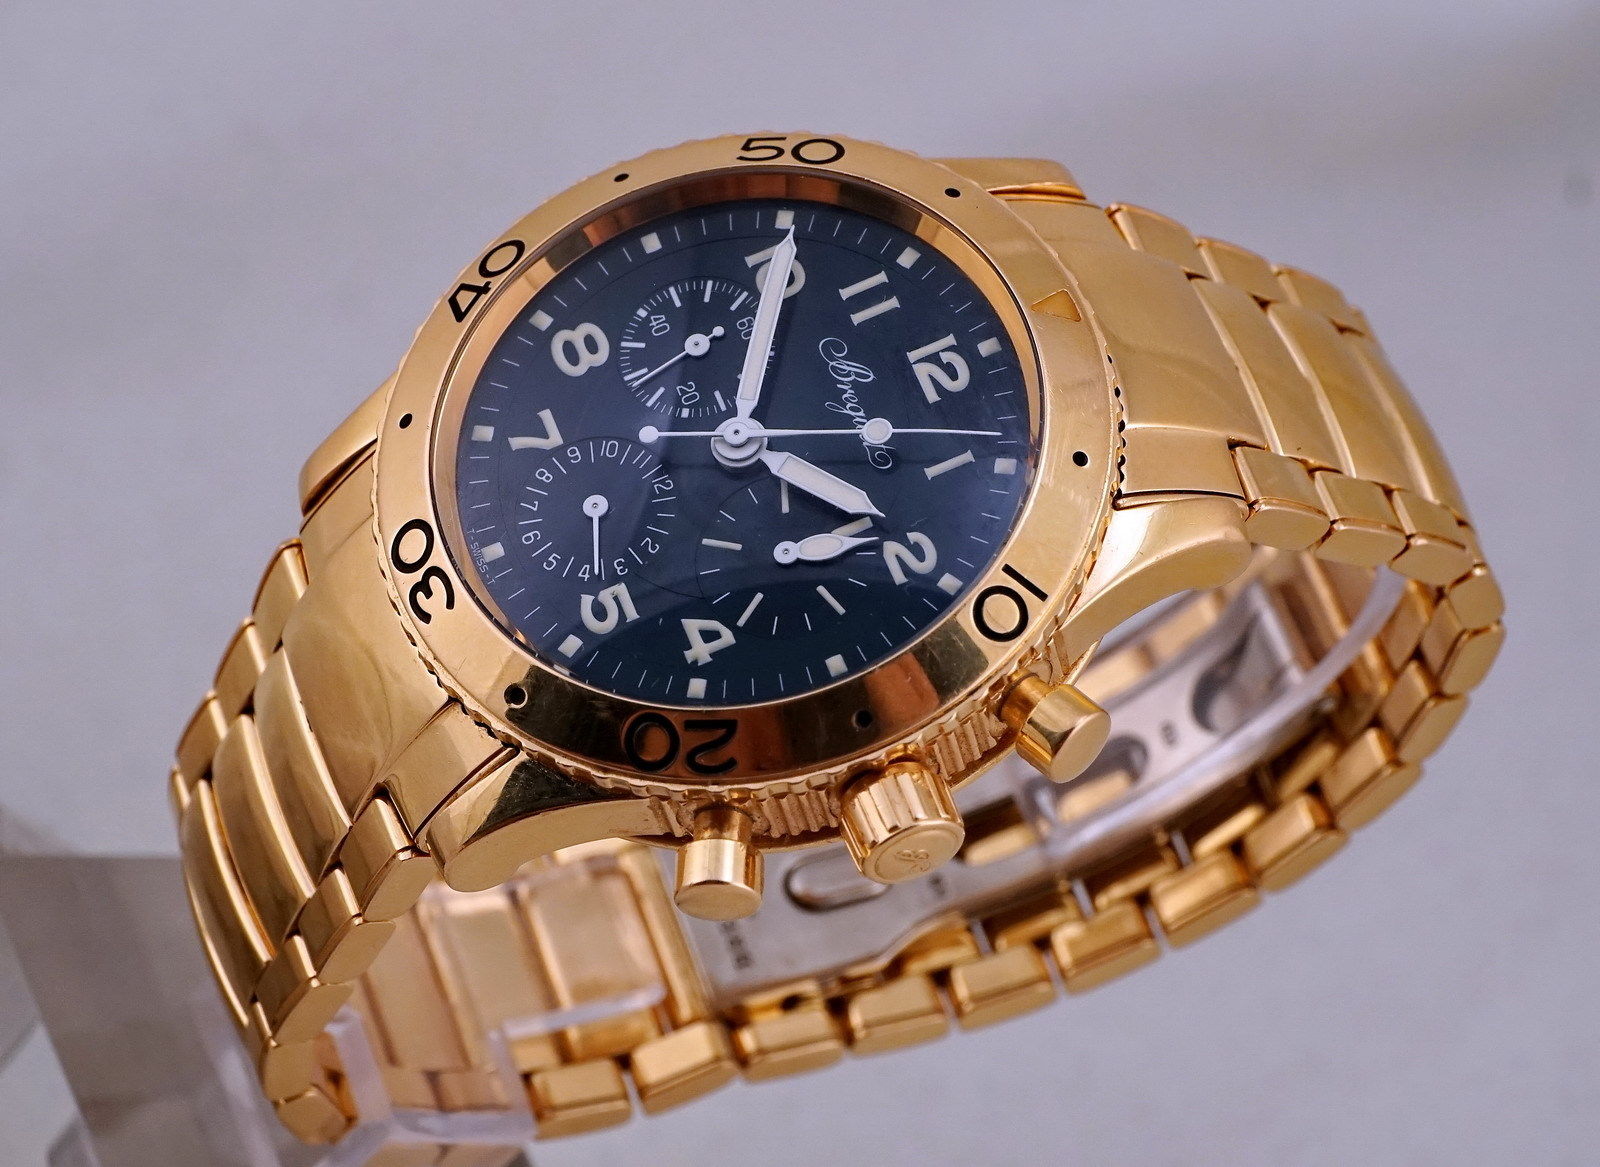 Breguet : Top 5 des montres les plus chères avec MeilleurVendeur.com 